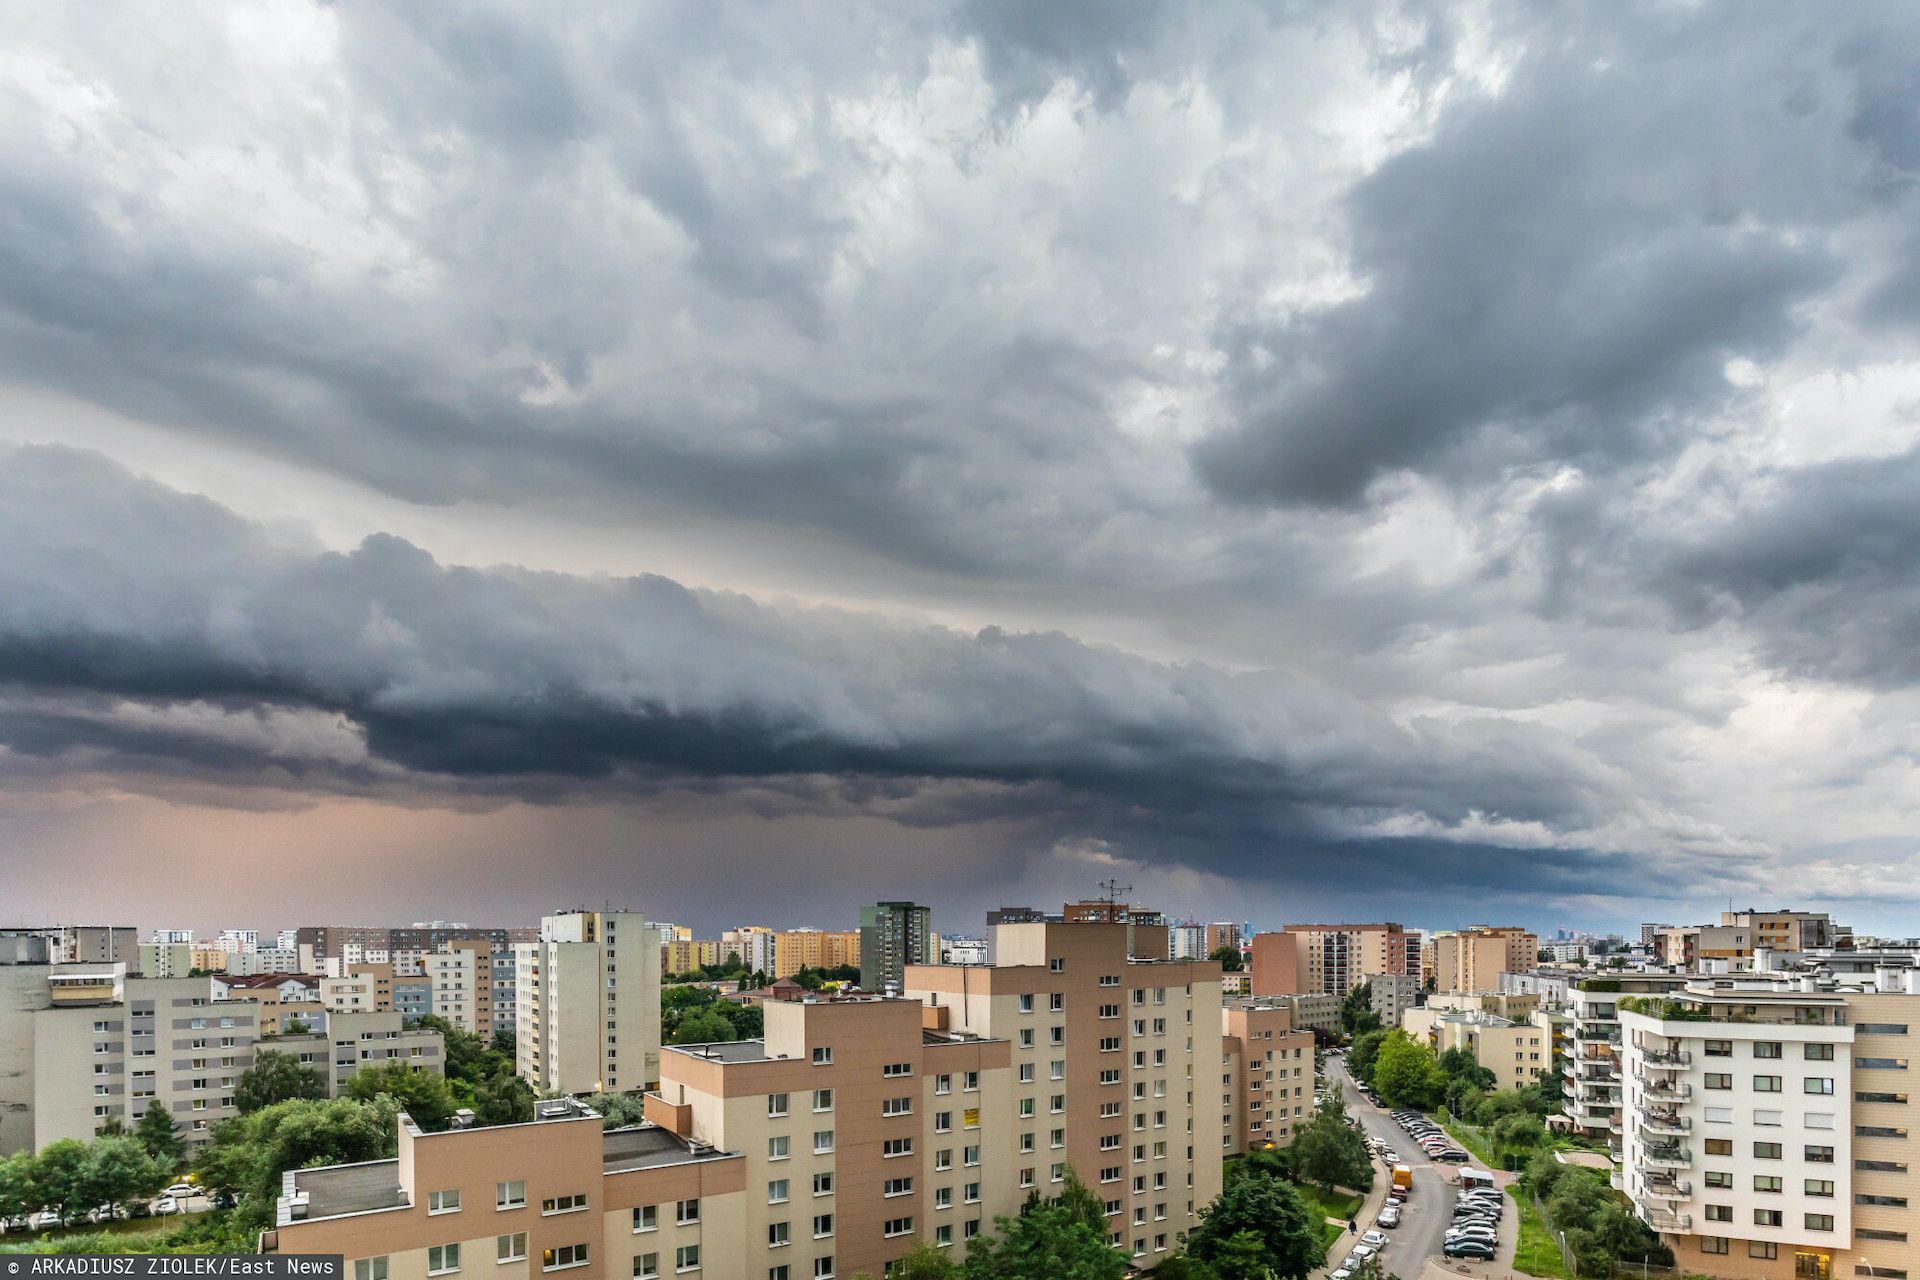 Prognoza pogody: IMGW wydało szereg ostrzeżeń, nie wszystkie dotyczą burzy